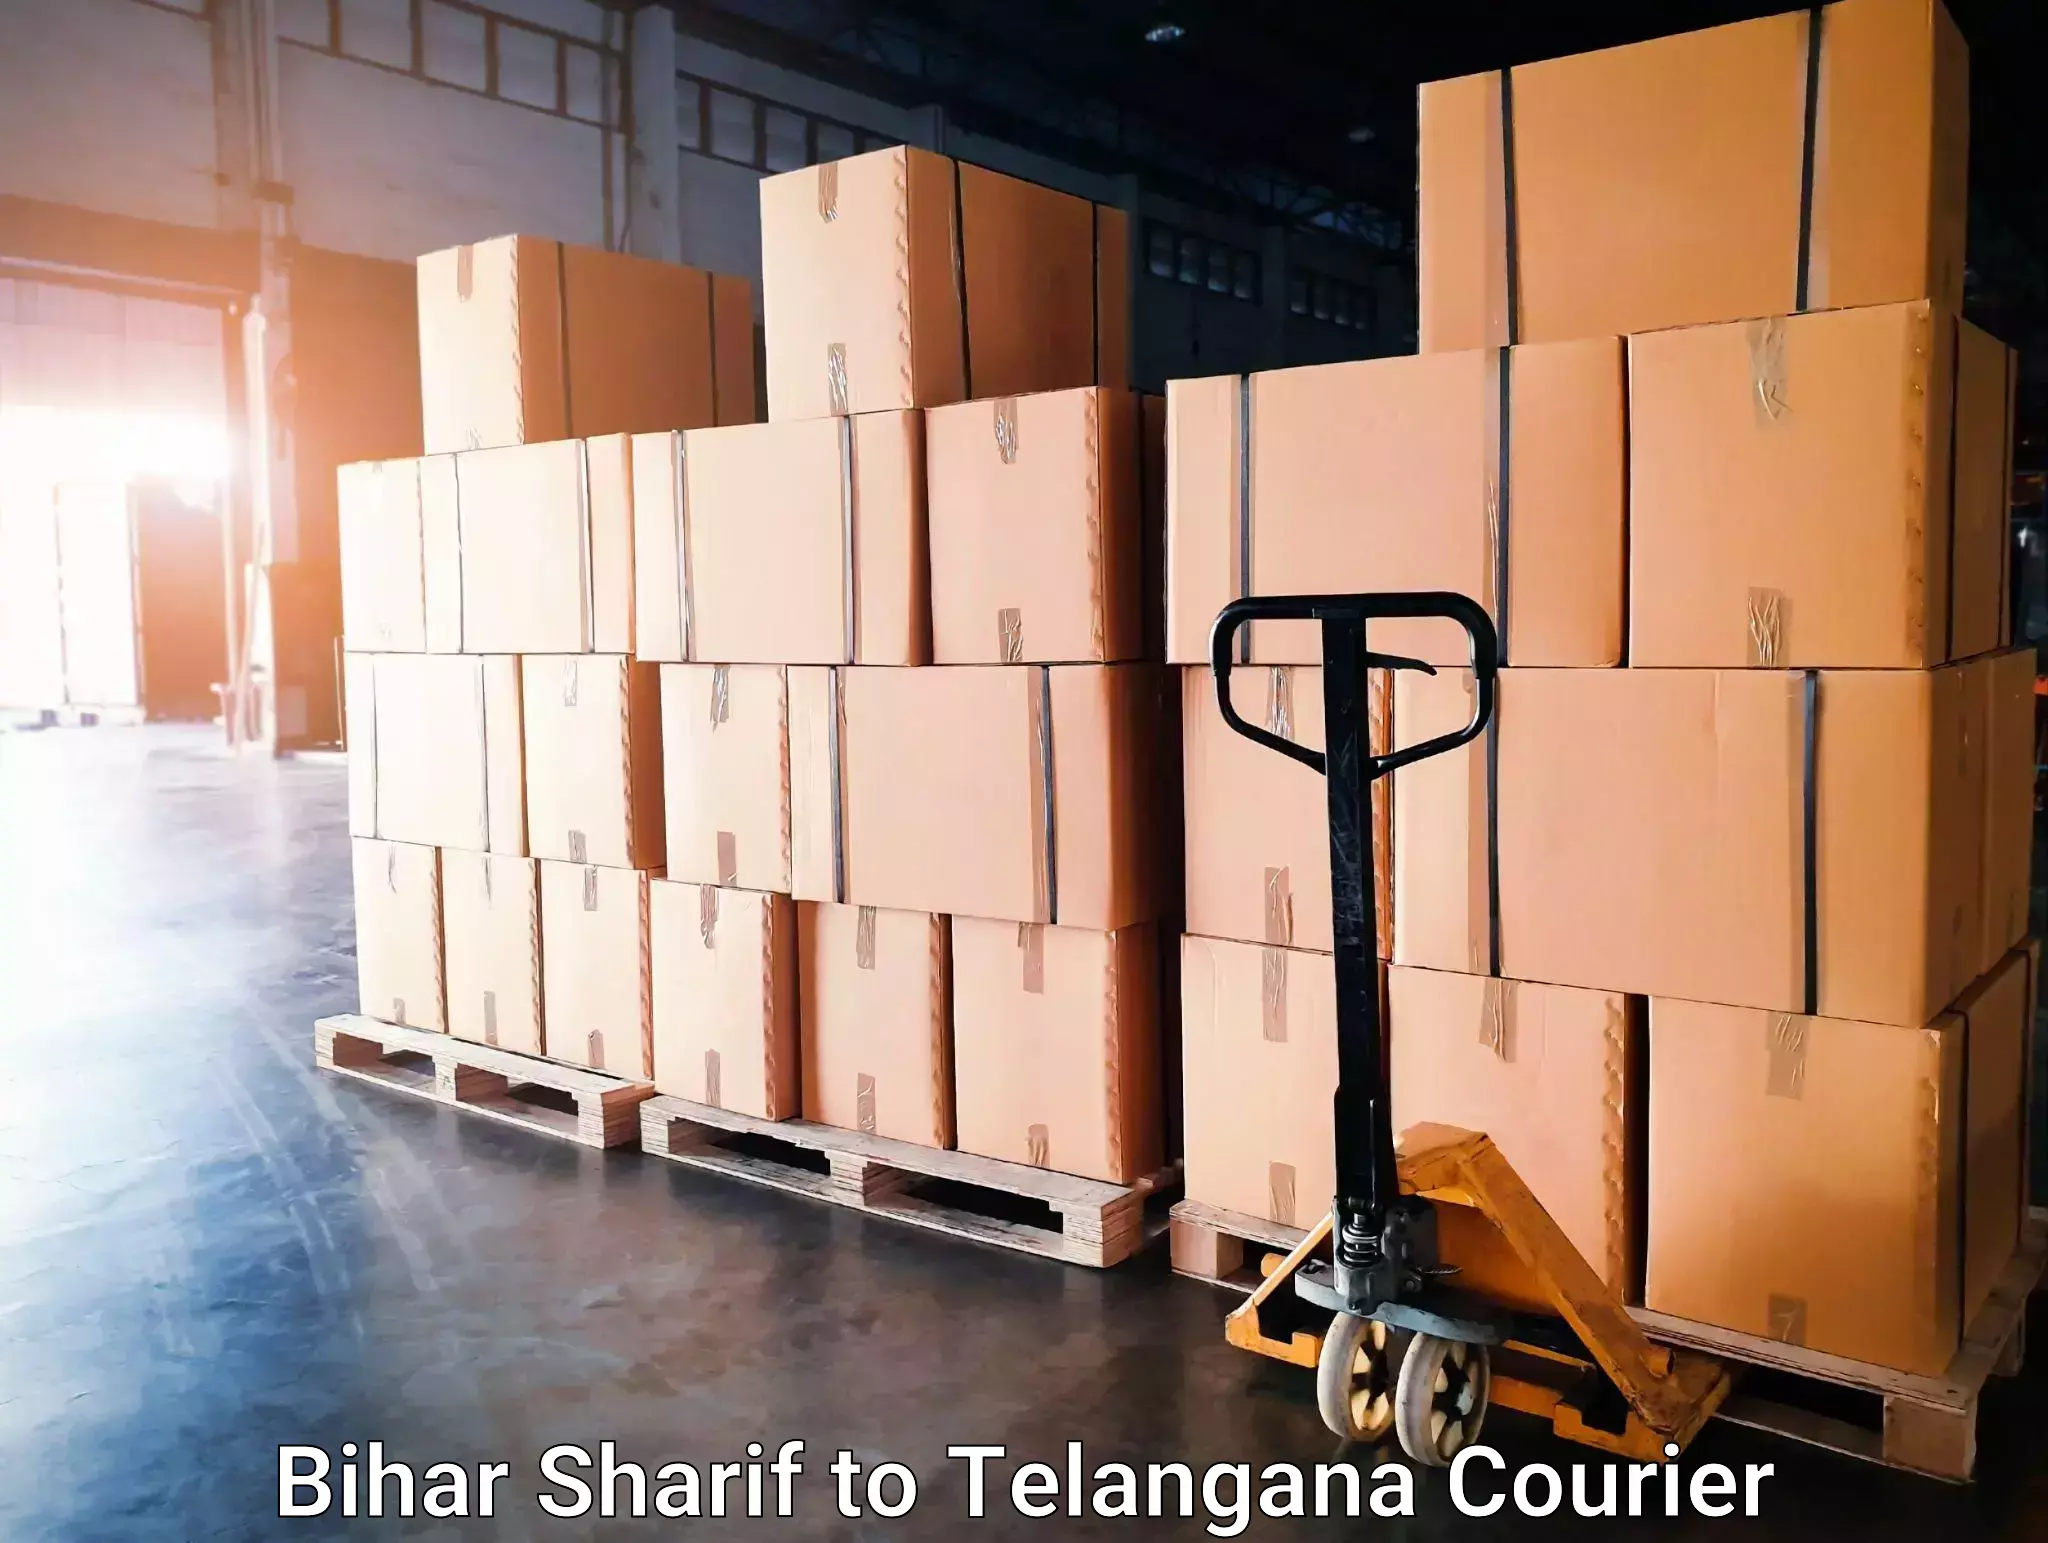 Moving and packing experts Bihar Sharif to Sujatha Nagar